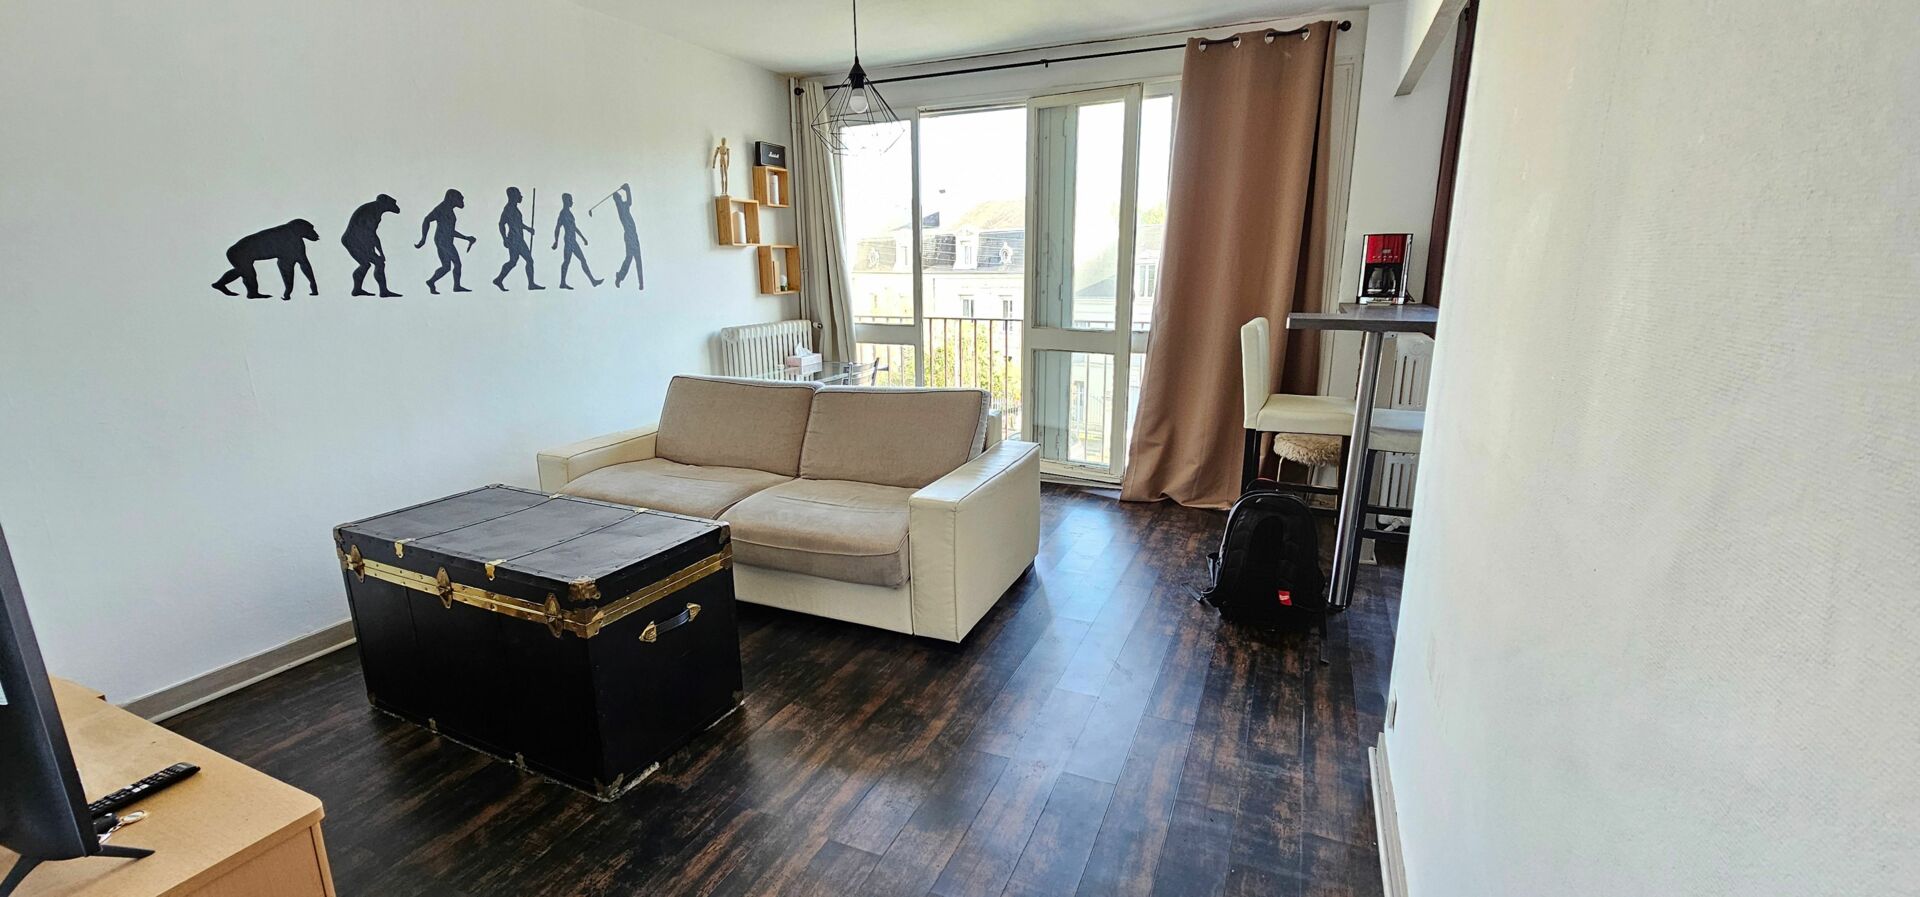 Appartement à vendre 1 29.5m2 à Poitiers vignette-4